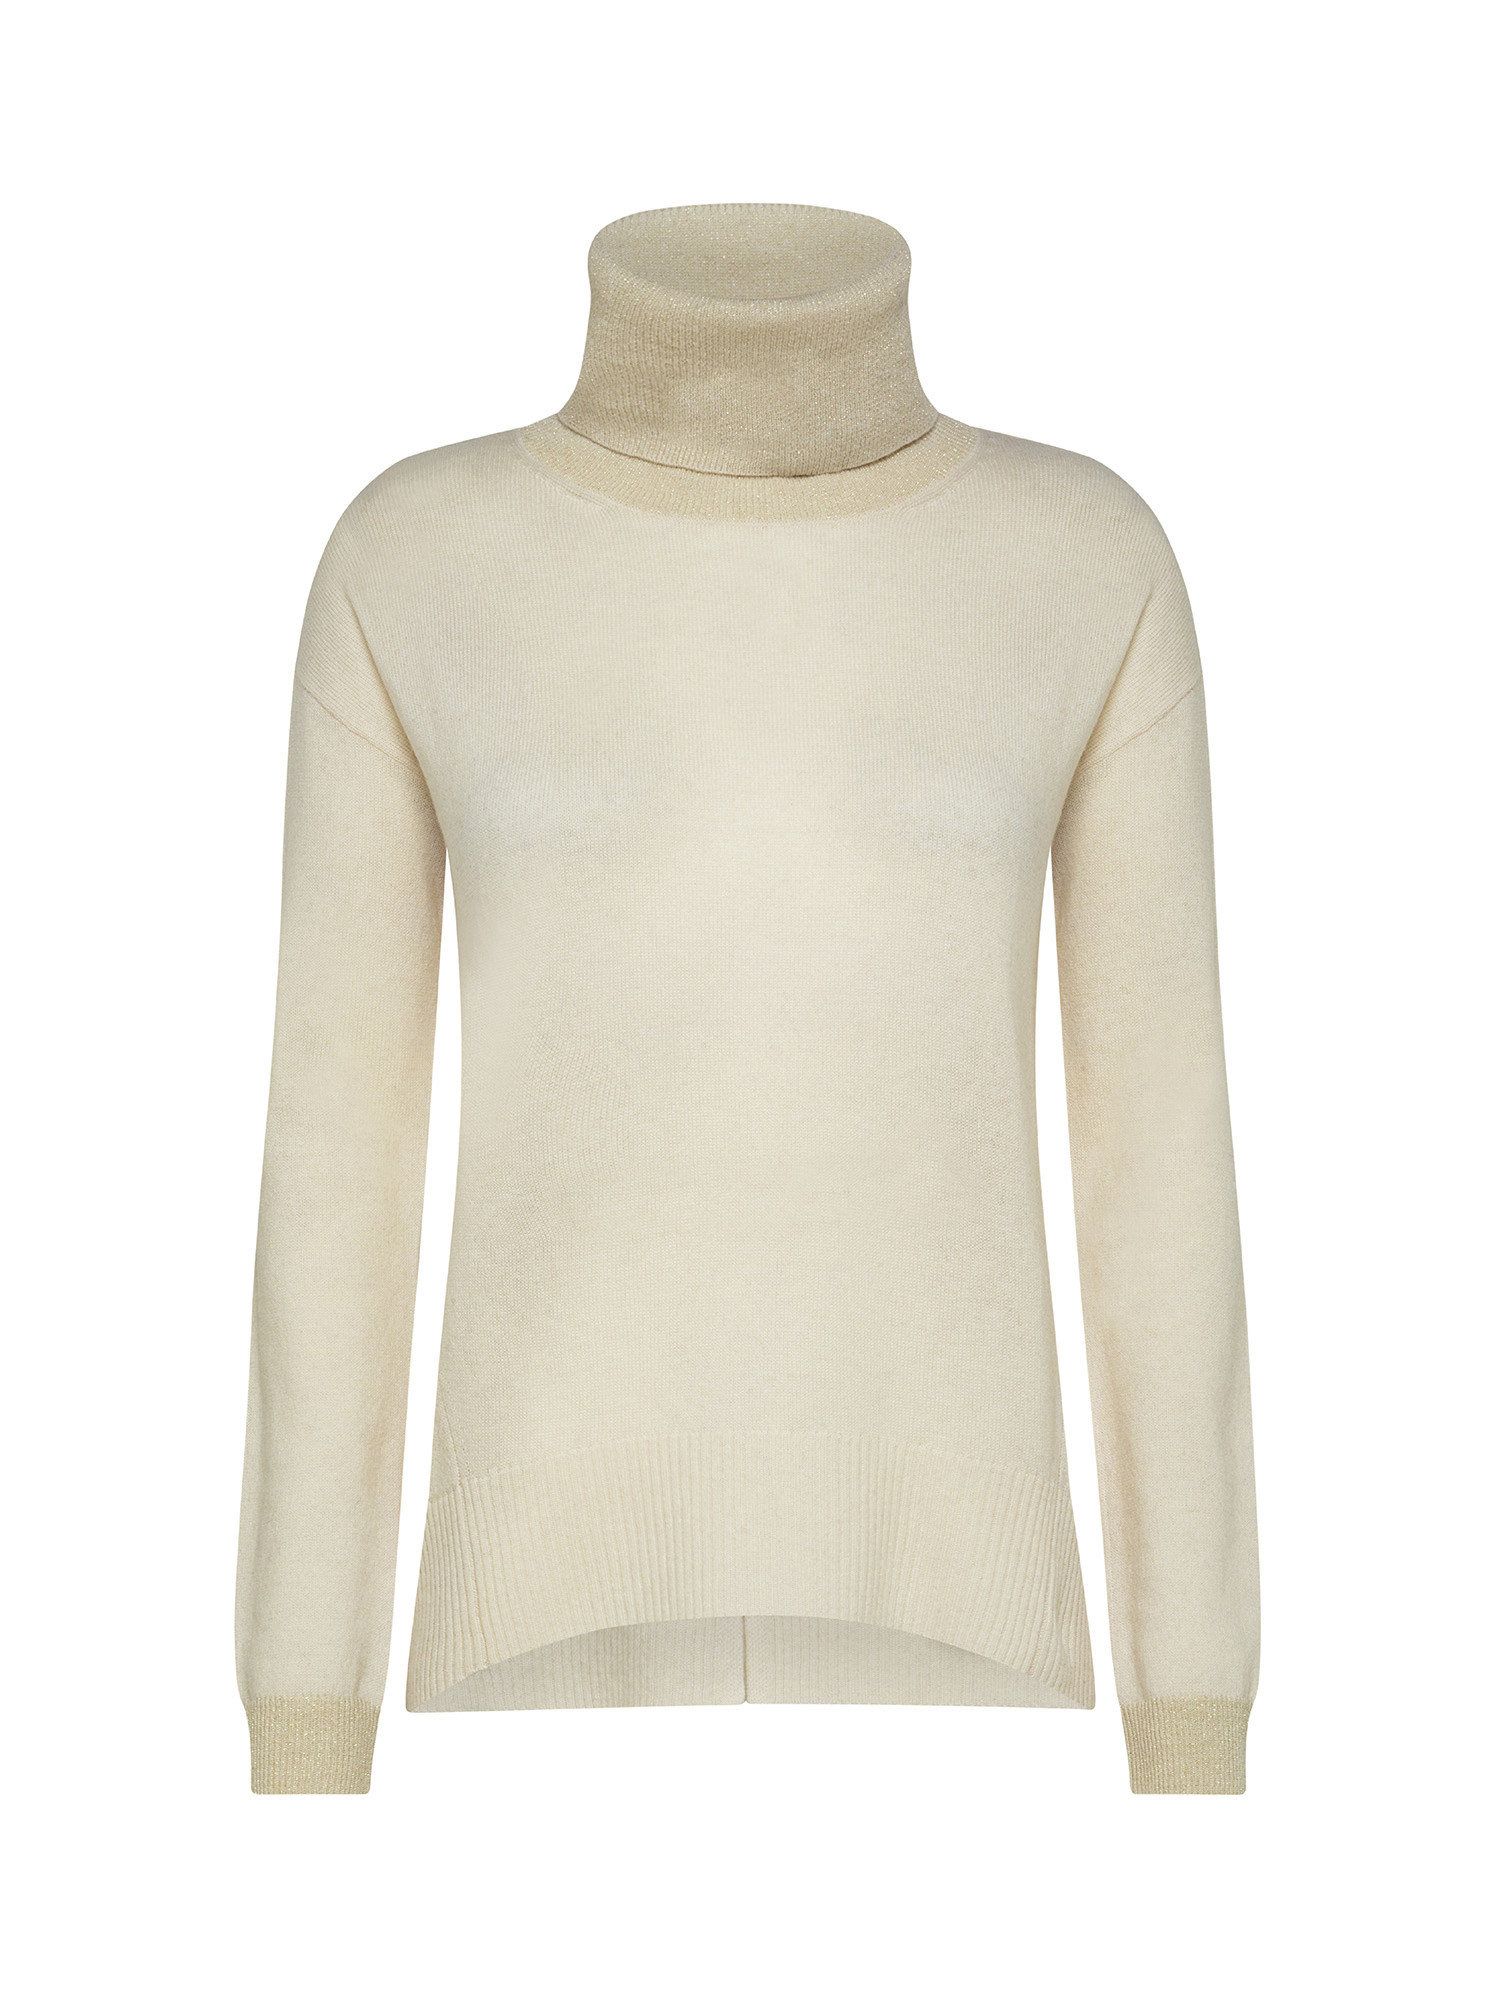 Koan - Pullover collo alto in lana e cashmere, Bianco, large image number 0